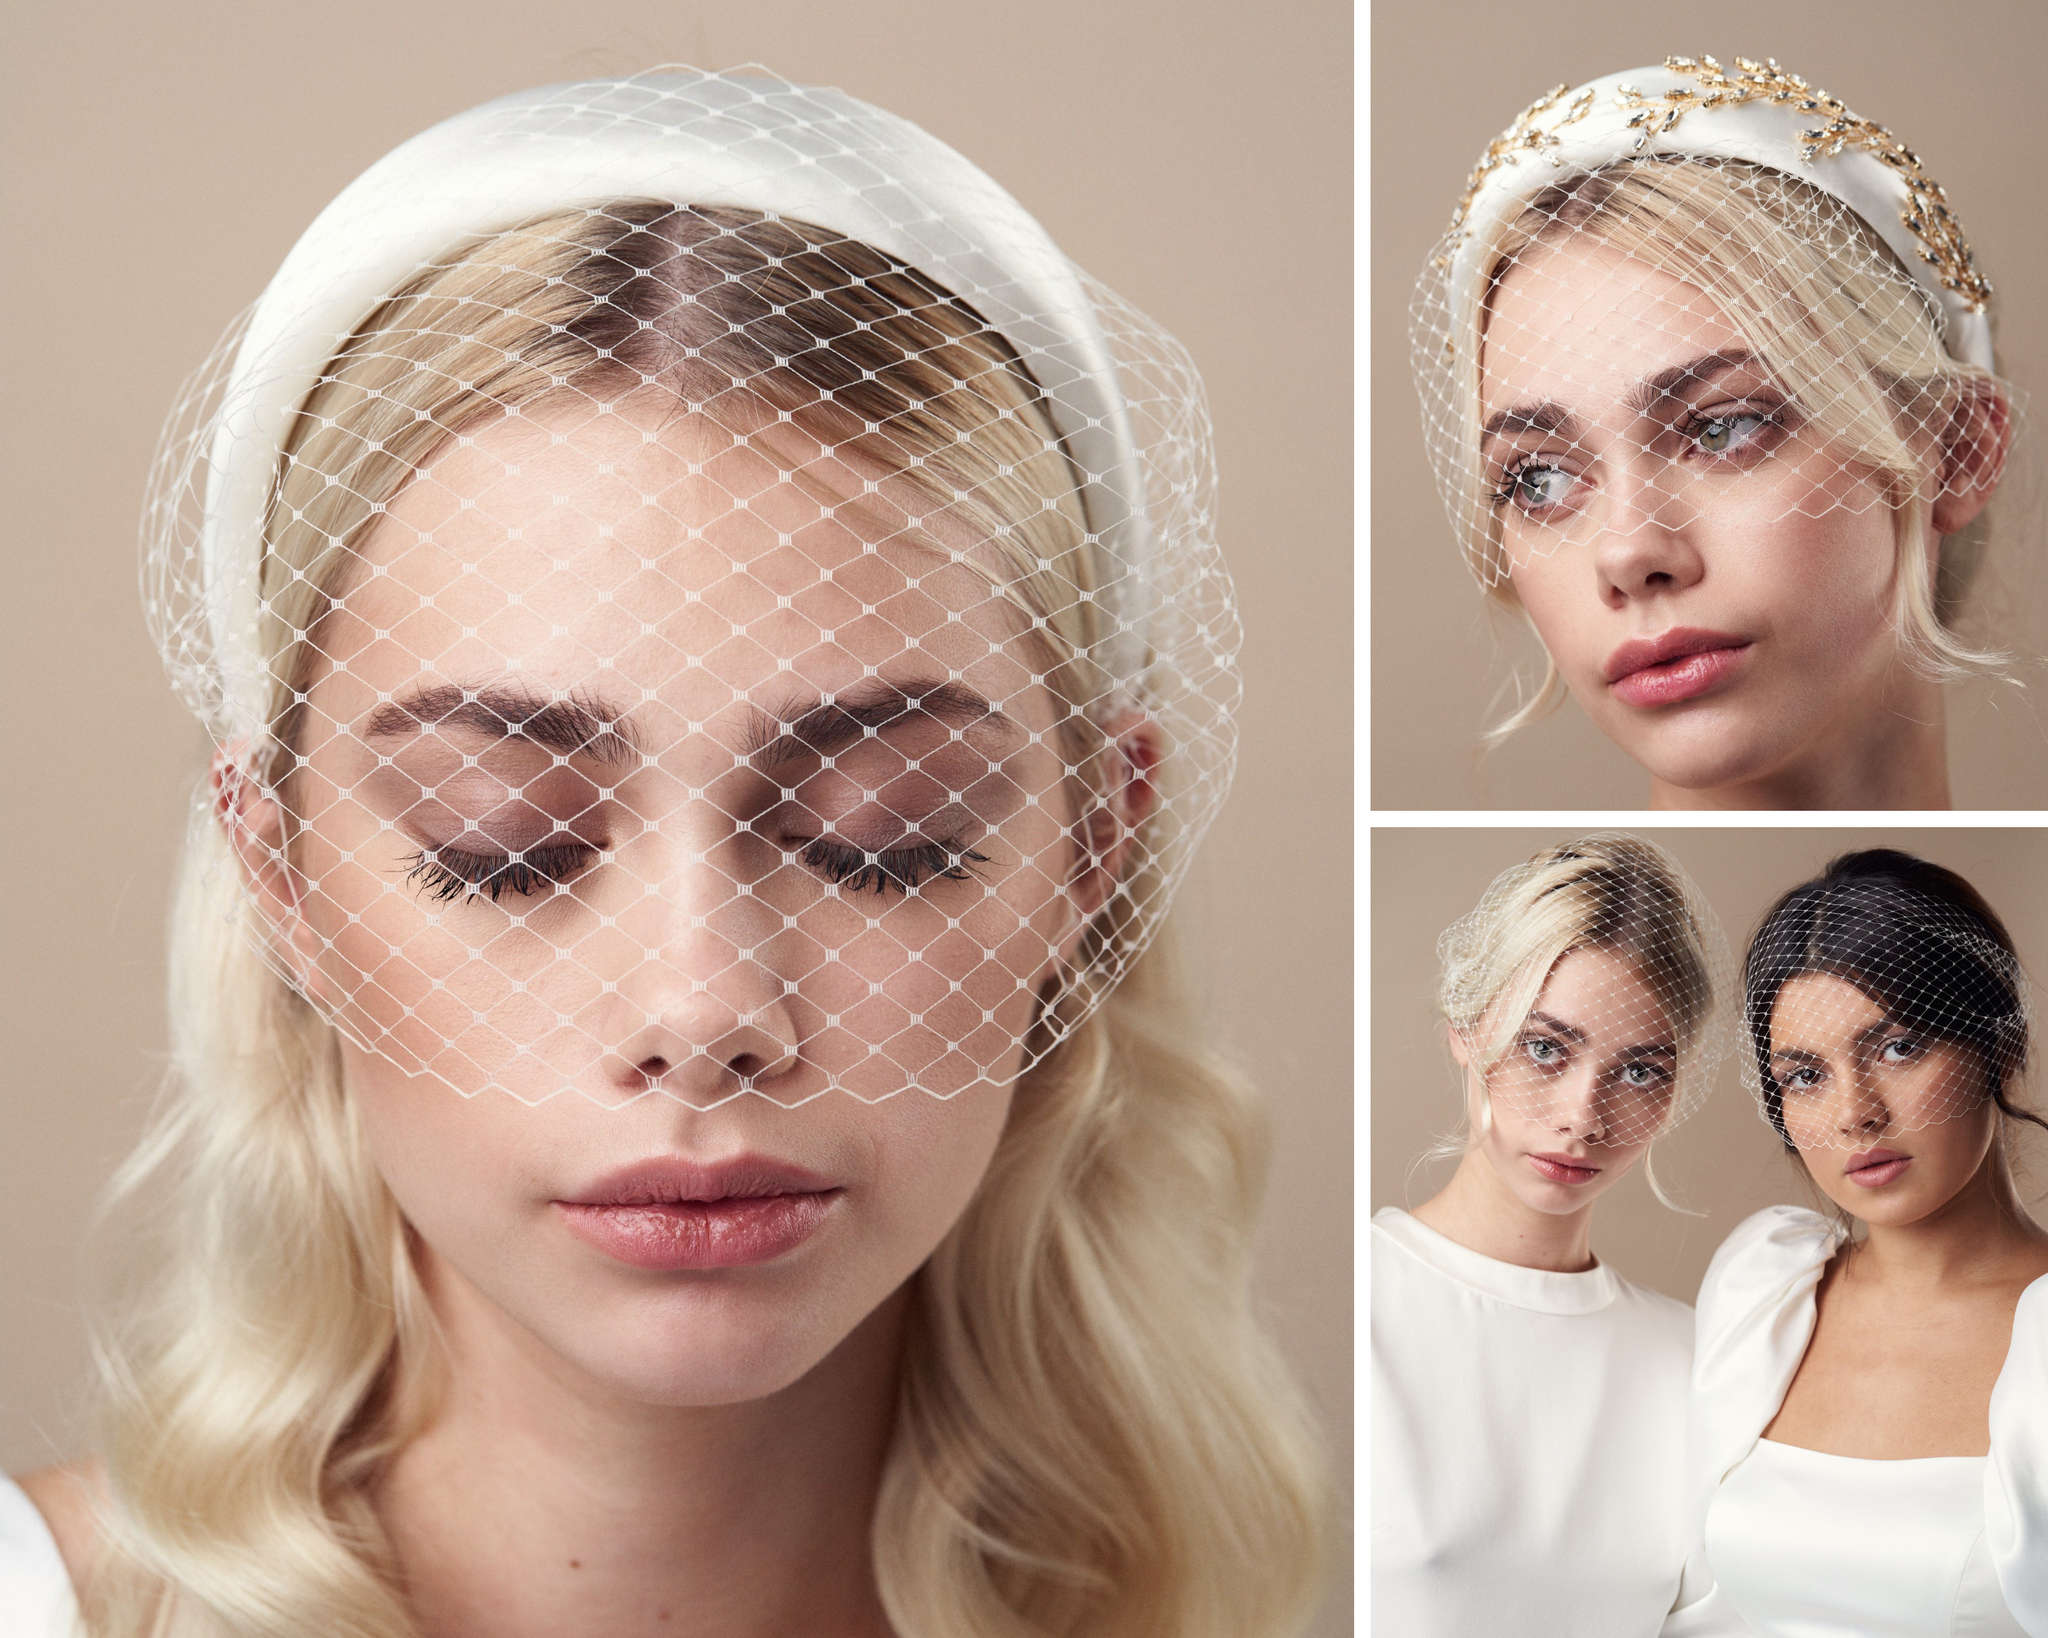 Models dressed as brides wear birdcage veils 